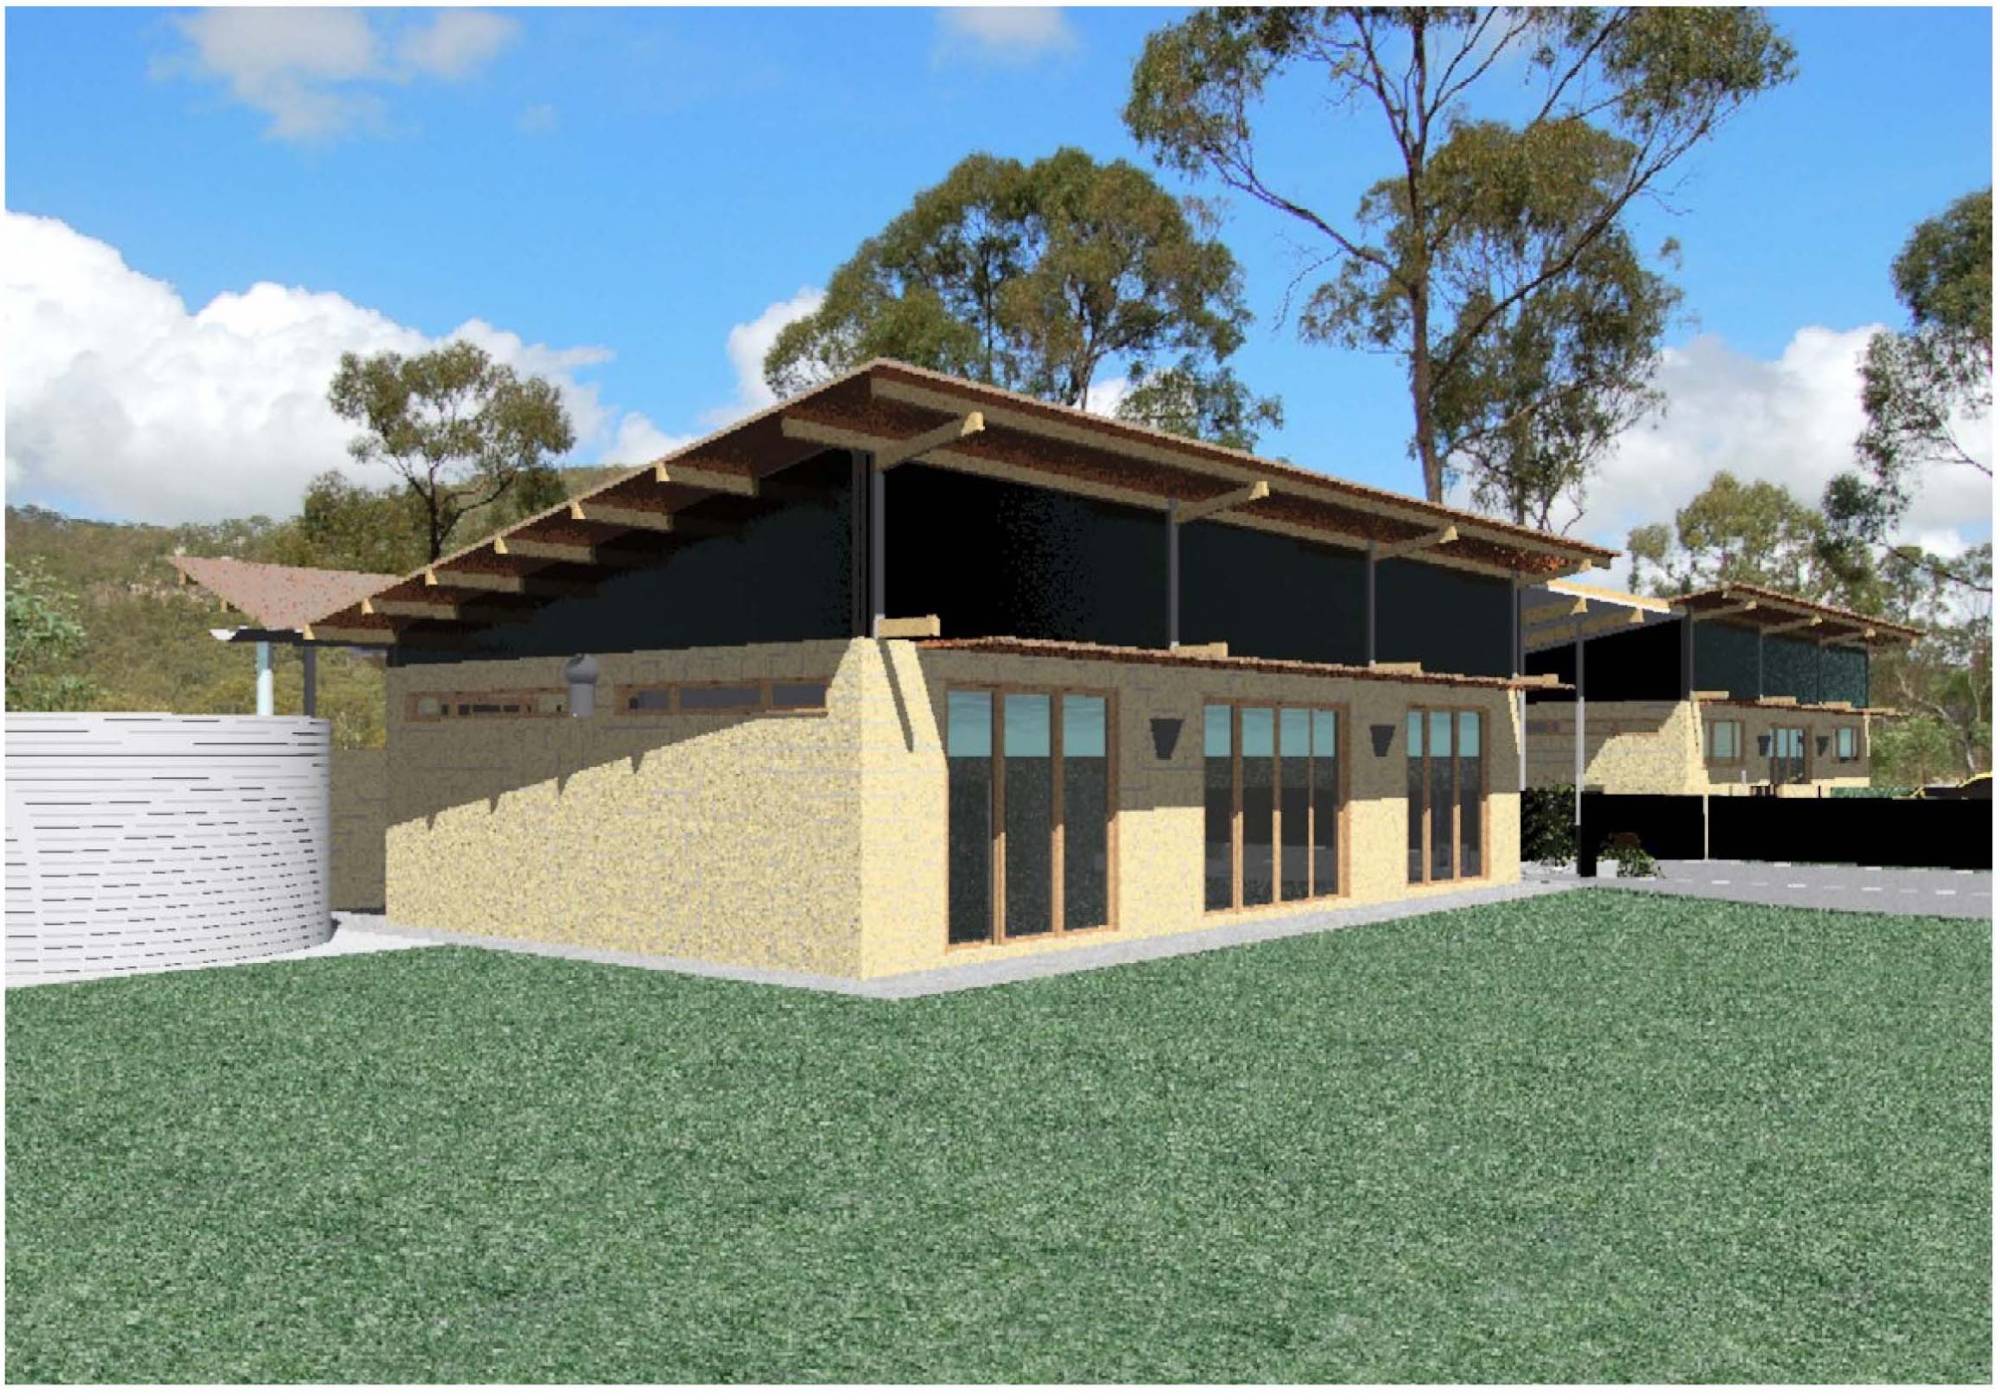 Central QLD farm house design | PTMA Architecture